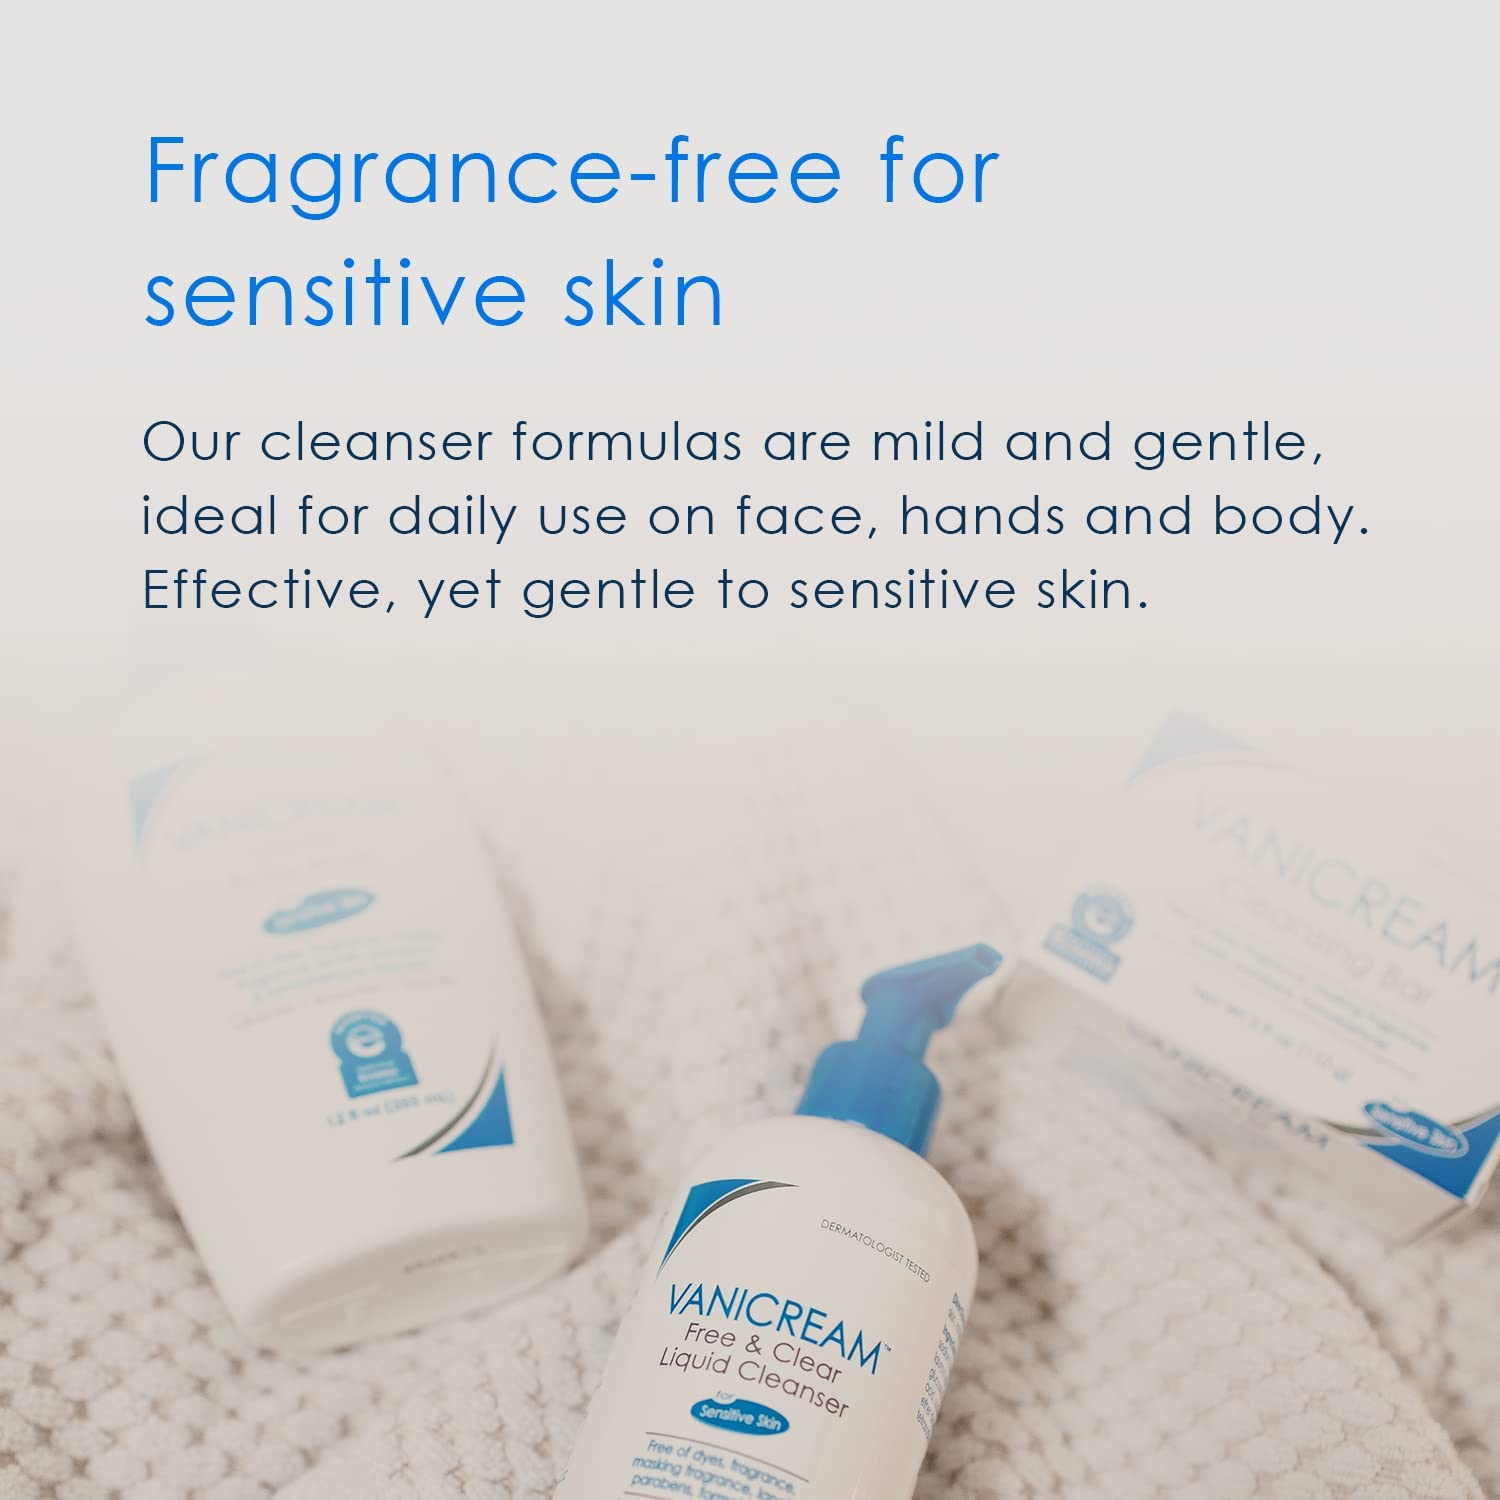 VANICREAM Liquid Cleanser For Sensitive Skin 237ml